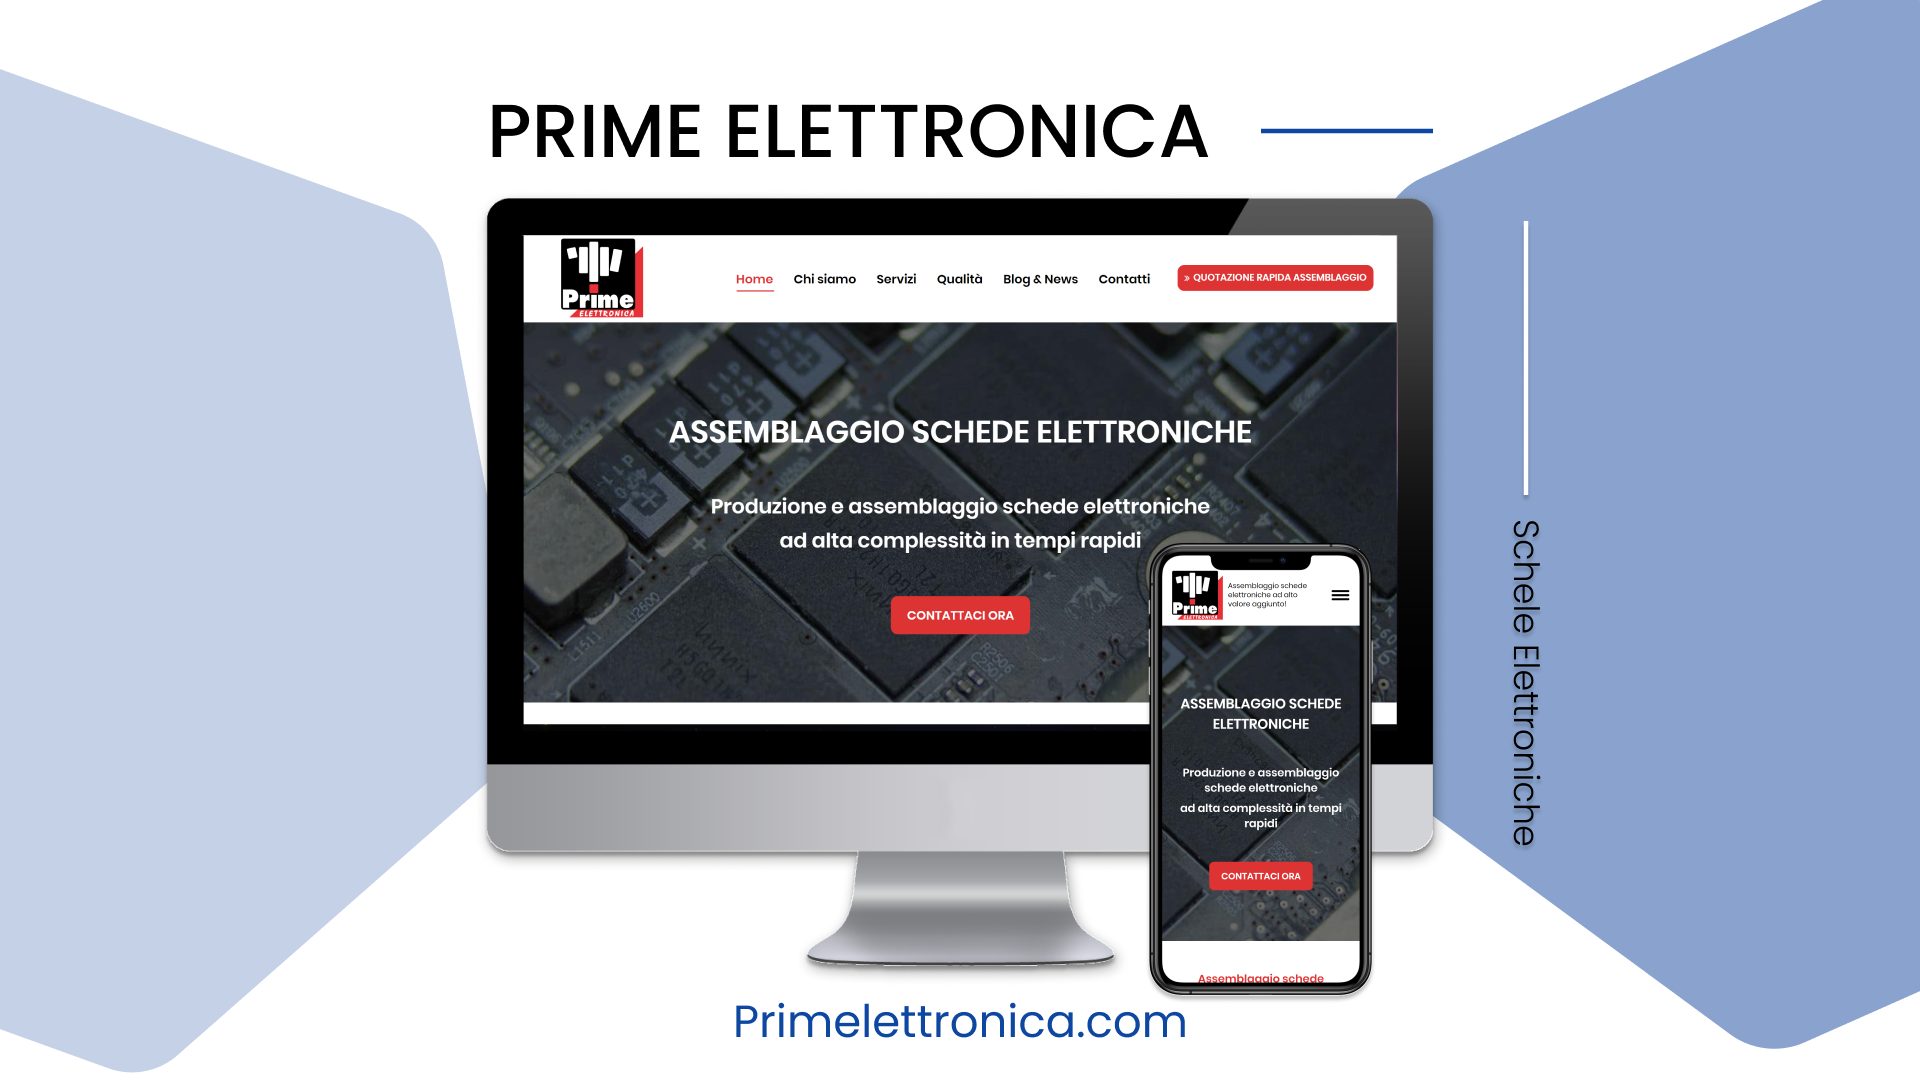 Prime Elettronica